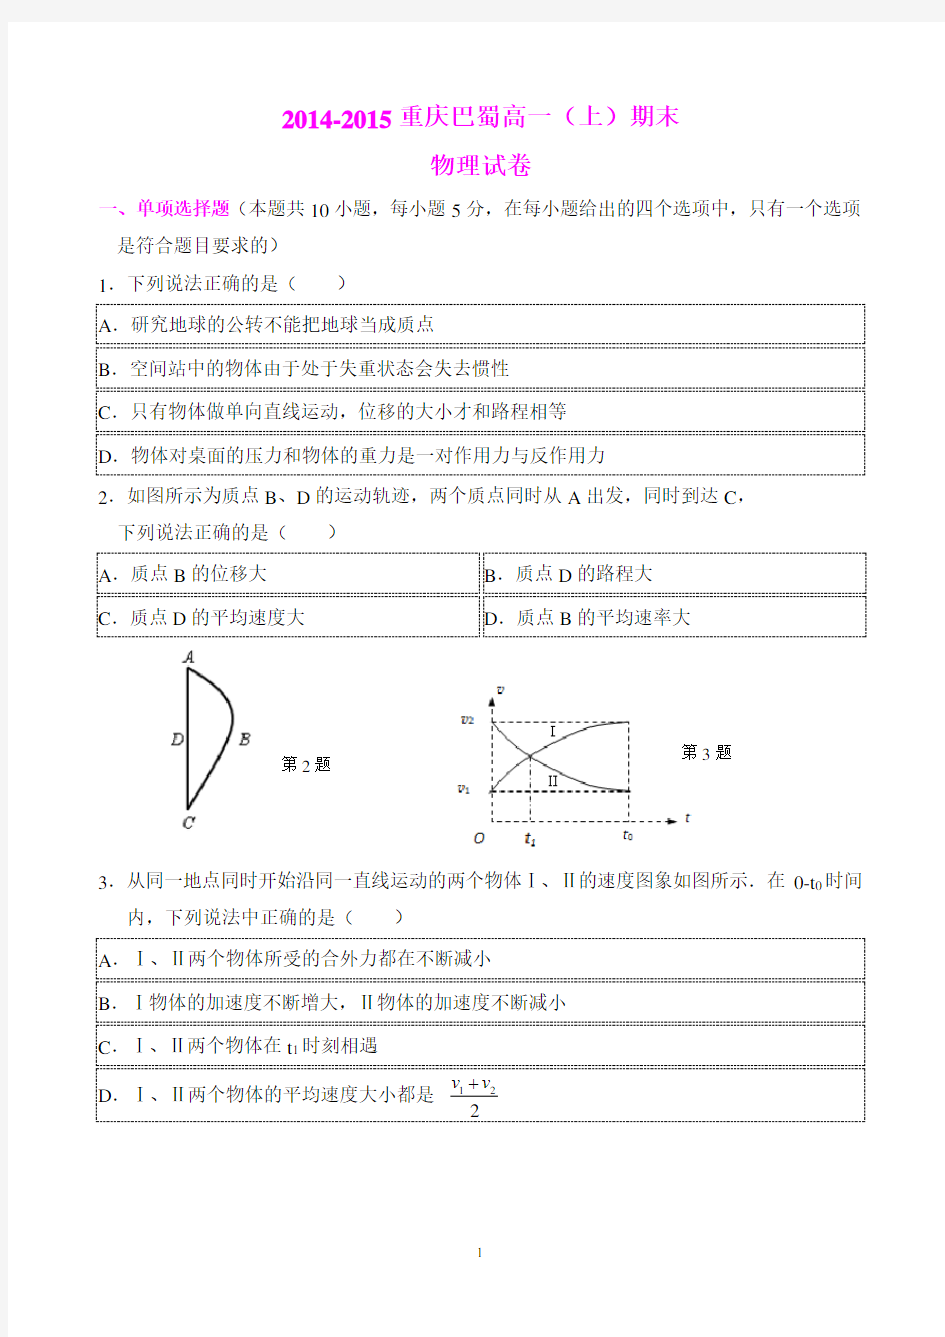 (完整版)重庆巴蜀中学高2017级高一(上)期末物理试卷及其答案